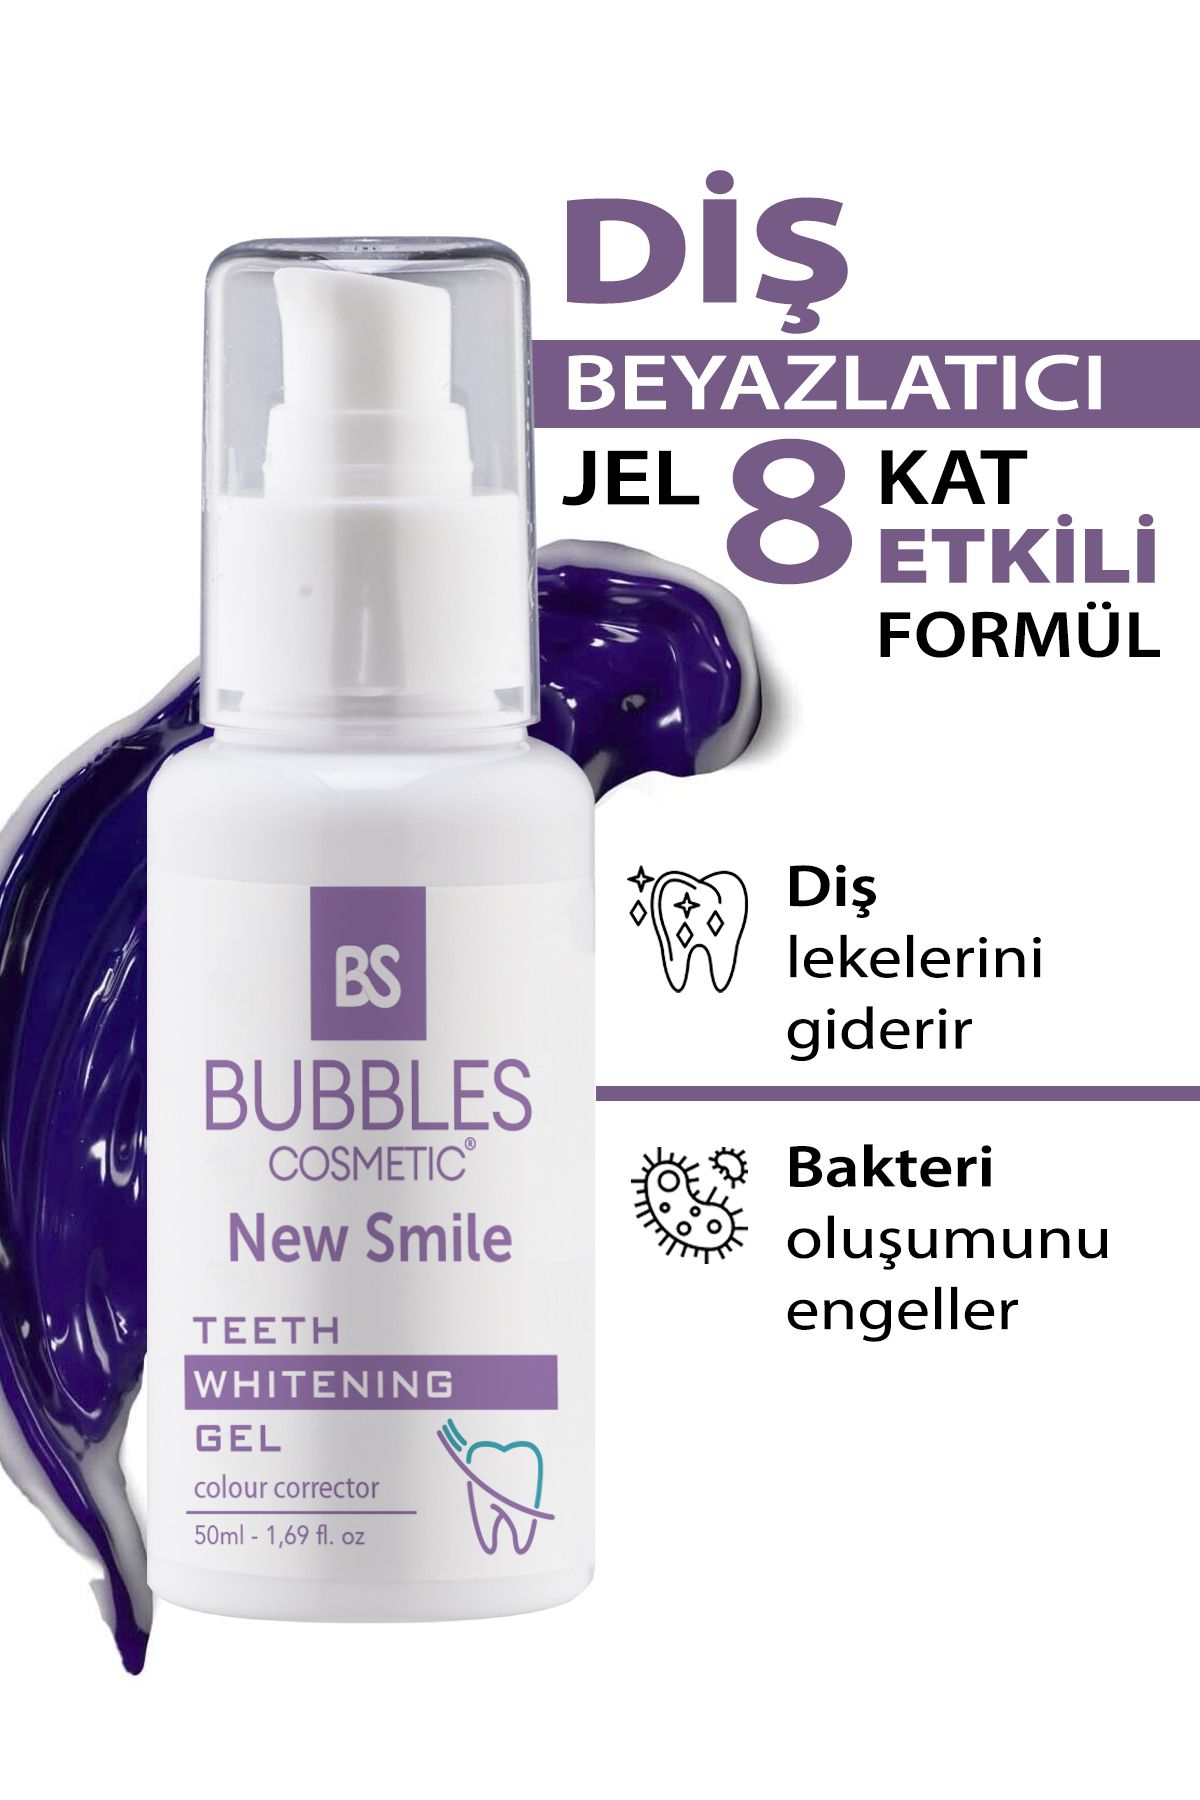 bs bubbles cosmetic Anında Diş Beyazlatıcı Jel Mükemmel Gülüşler Için 8 Kat Etkili Formül 50ml